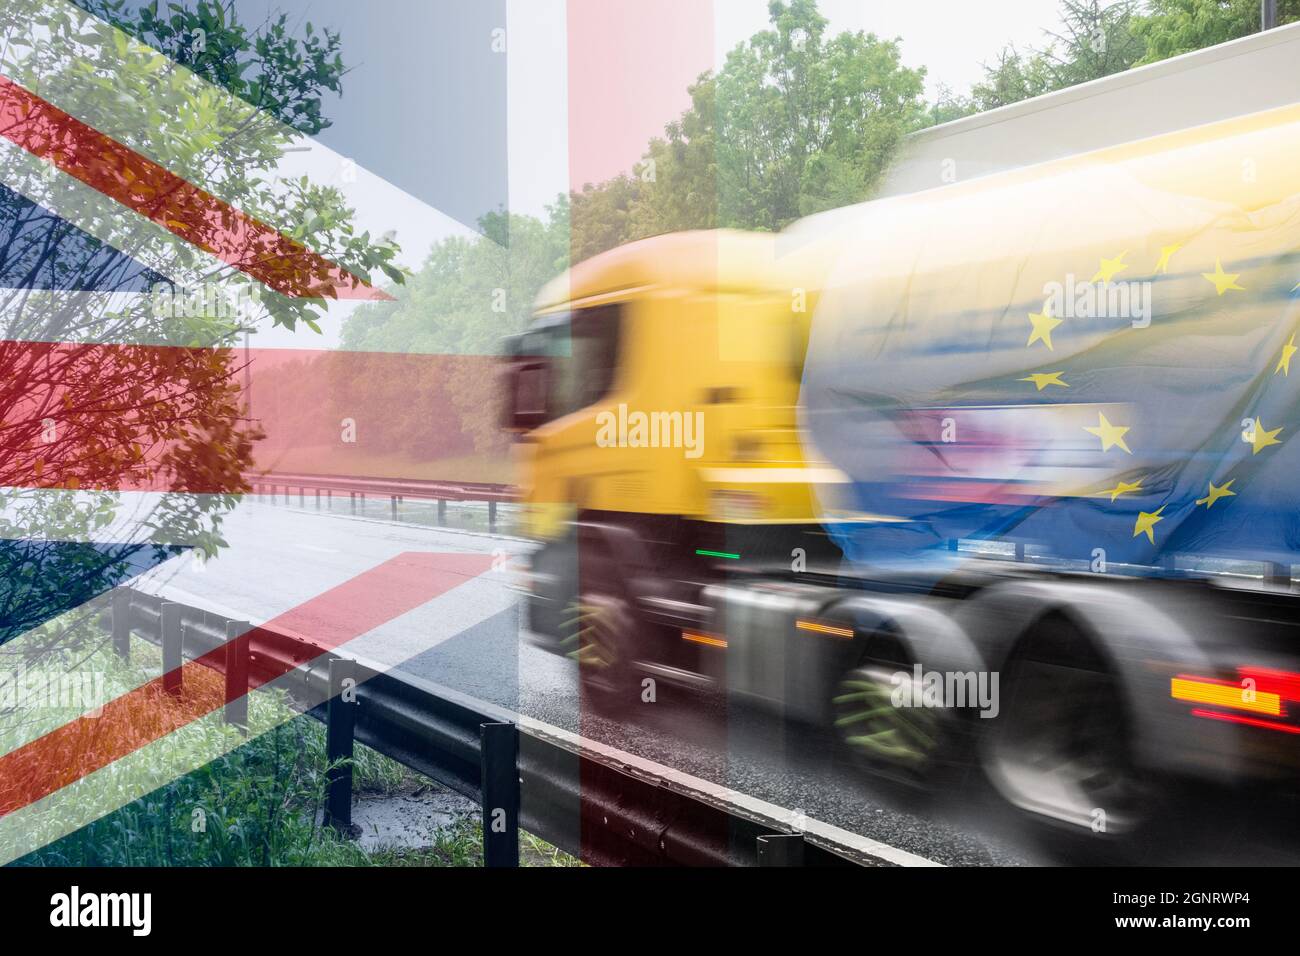 Réservoir de carburant avec drapeau UE et drapeau Royaume-Uni superposés. Hausse des prix du carburant, pénurie de conducteurs HGV, achat de panique du carburant, pénuries de Brexit... concept Banque D'Images